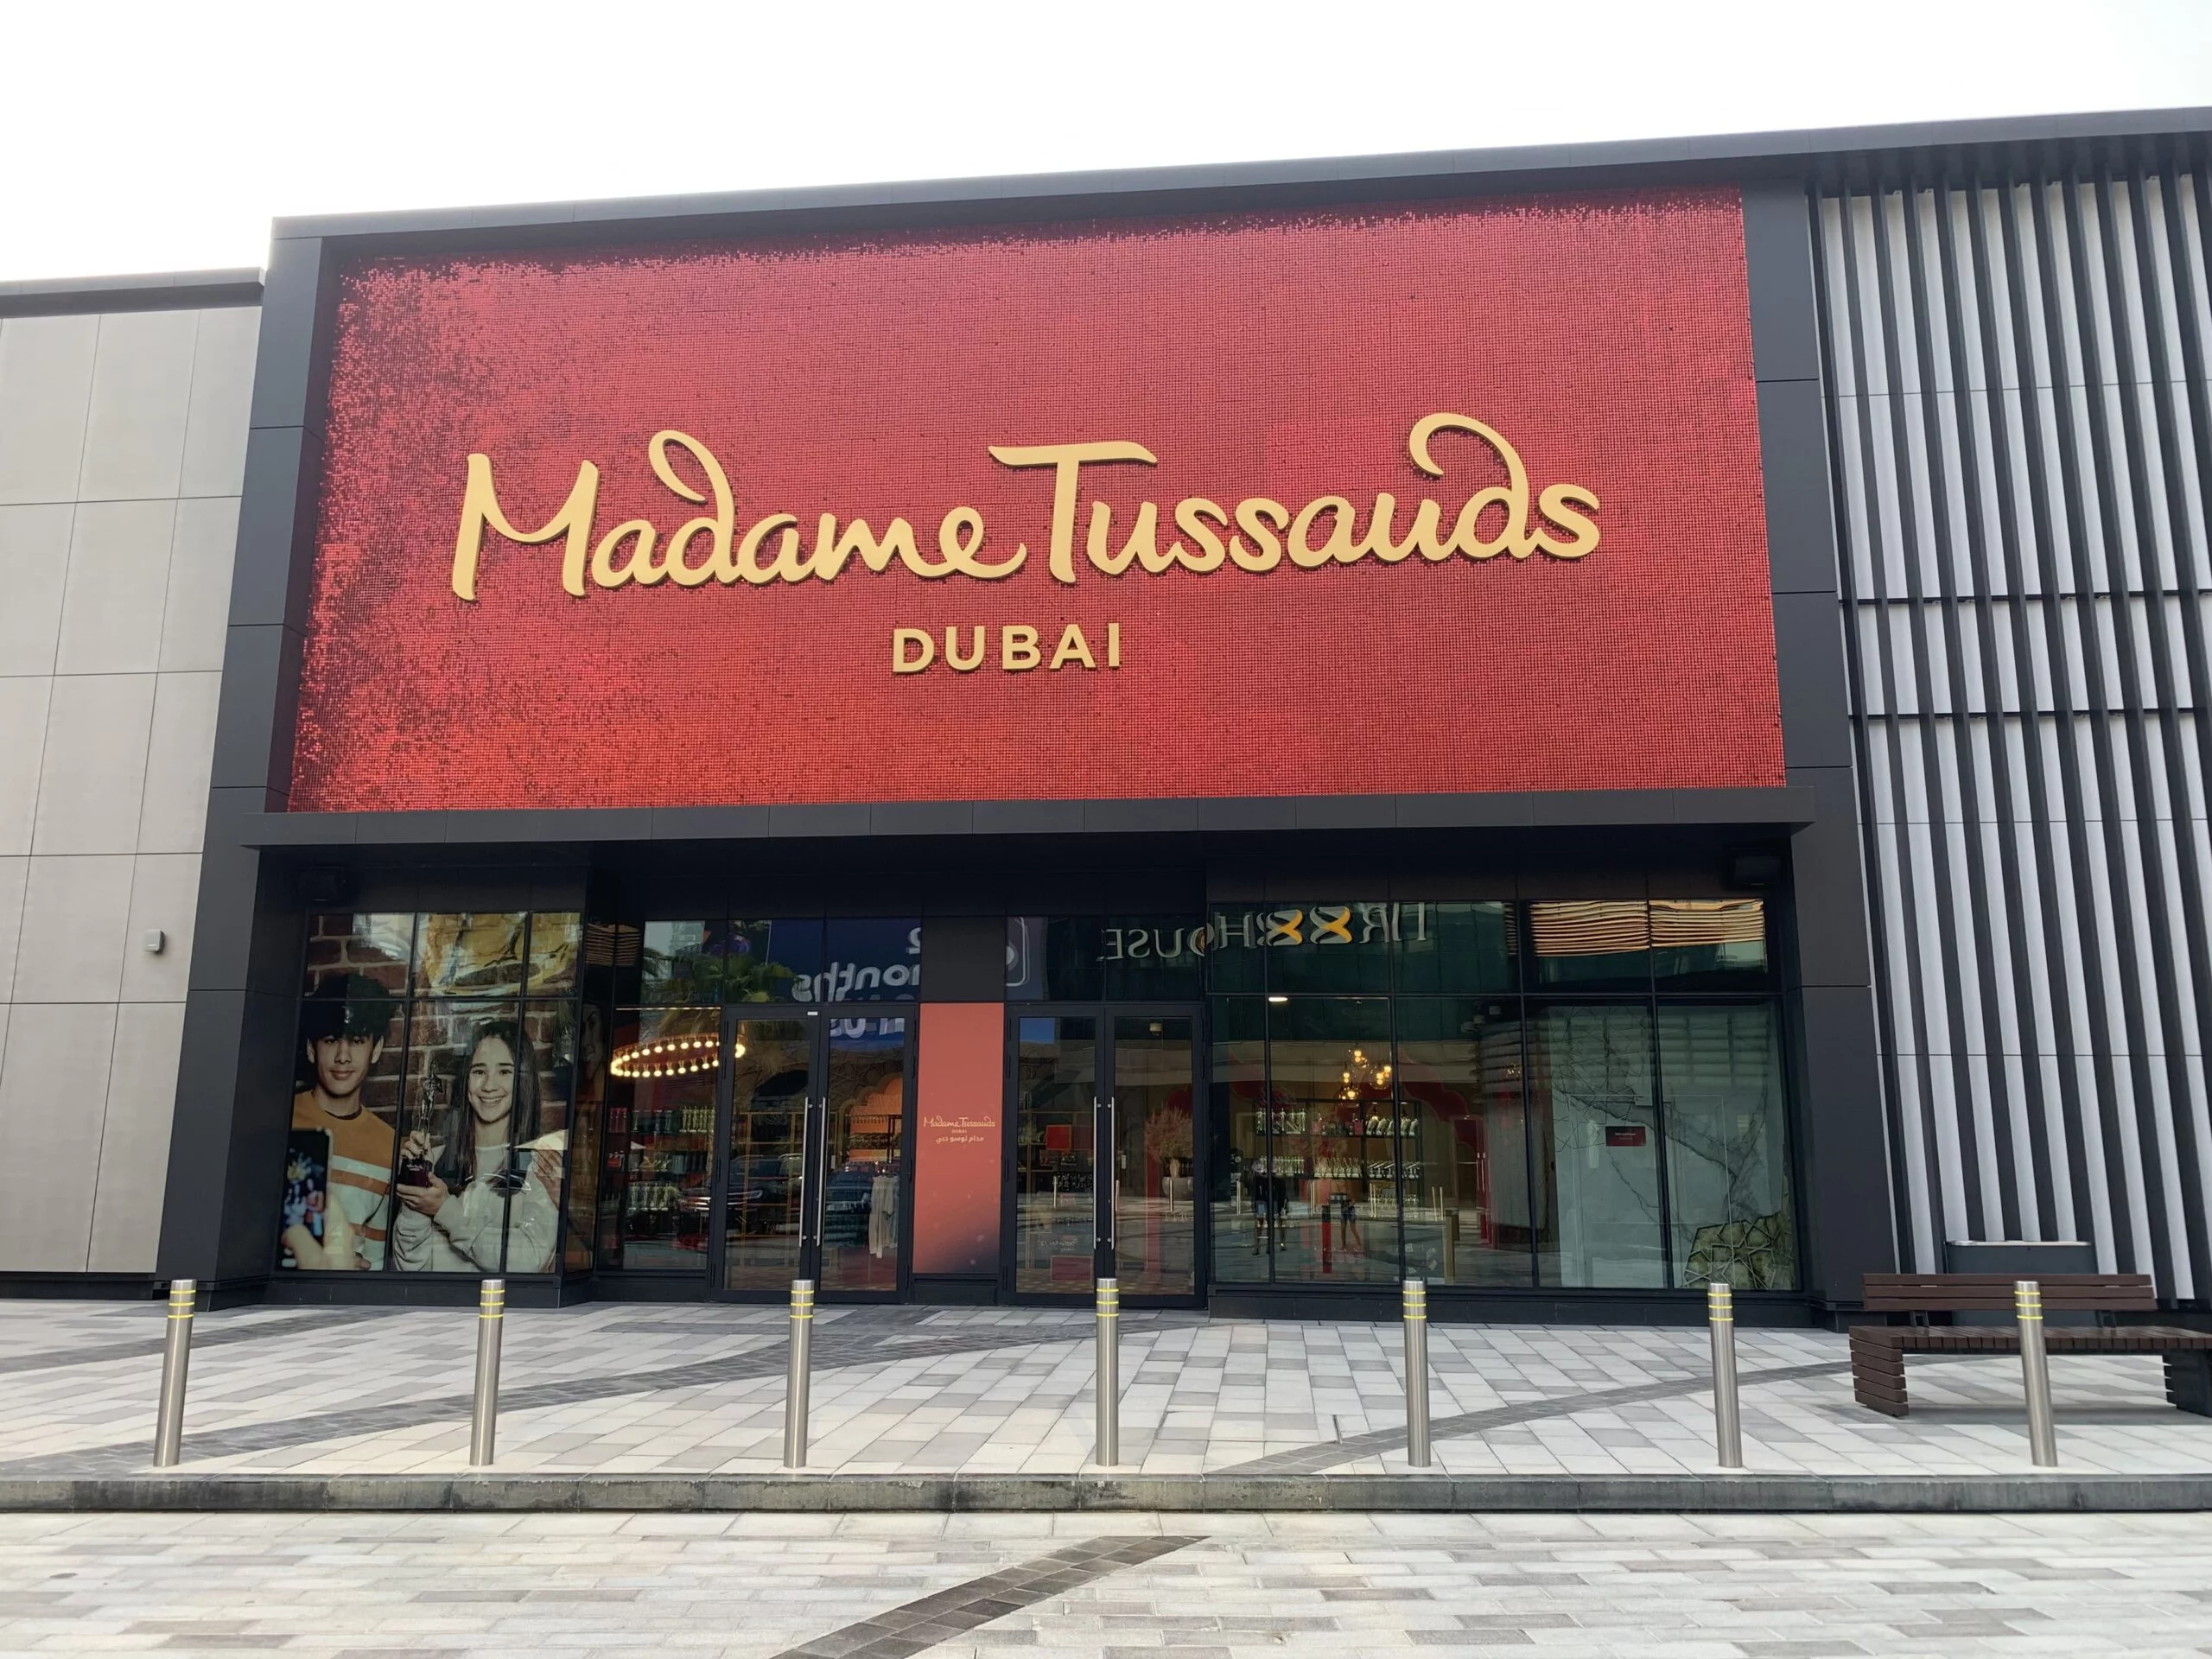 Madame Tussauds Museum - List of indoor activities in Dubai